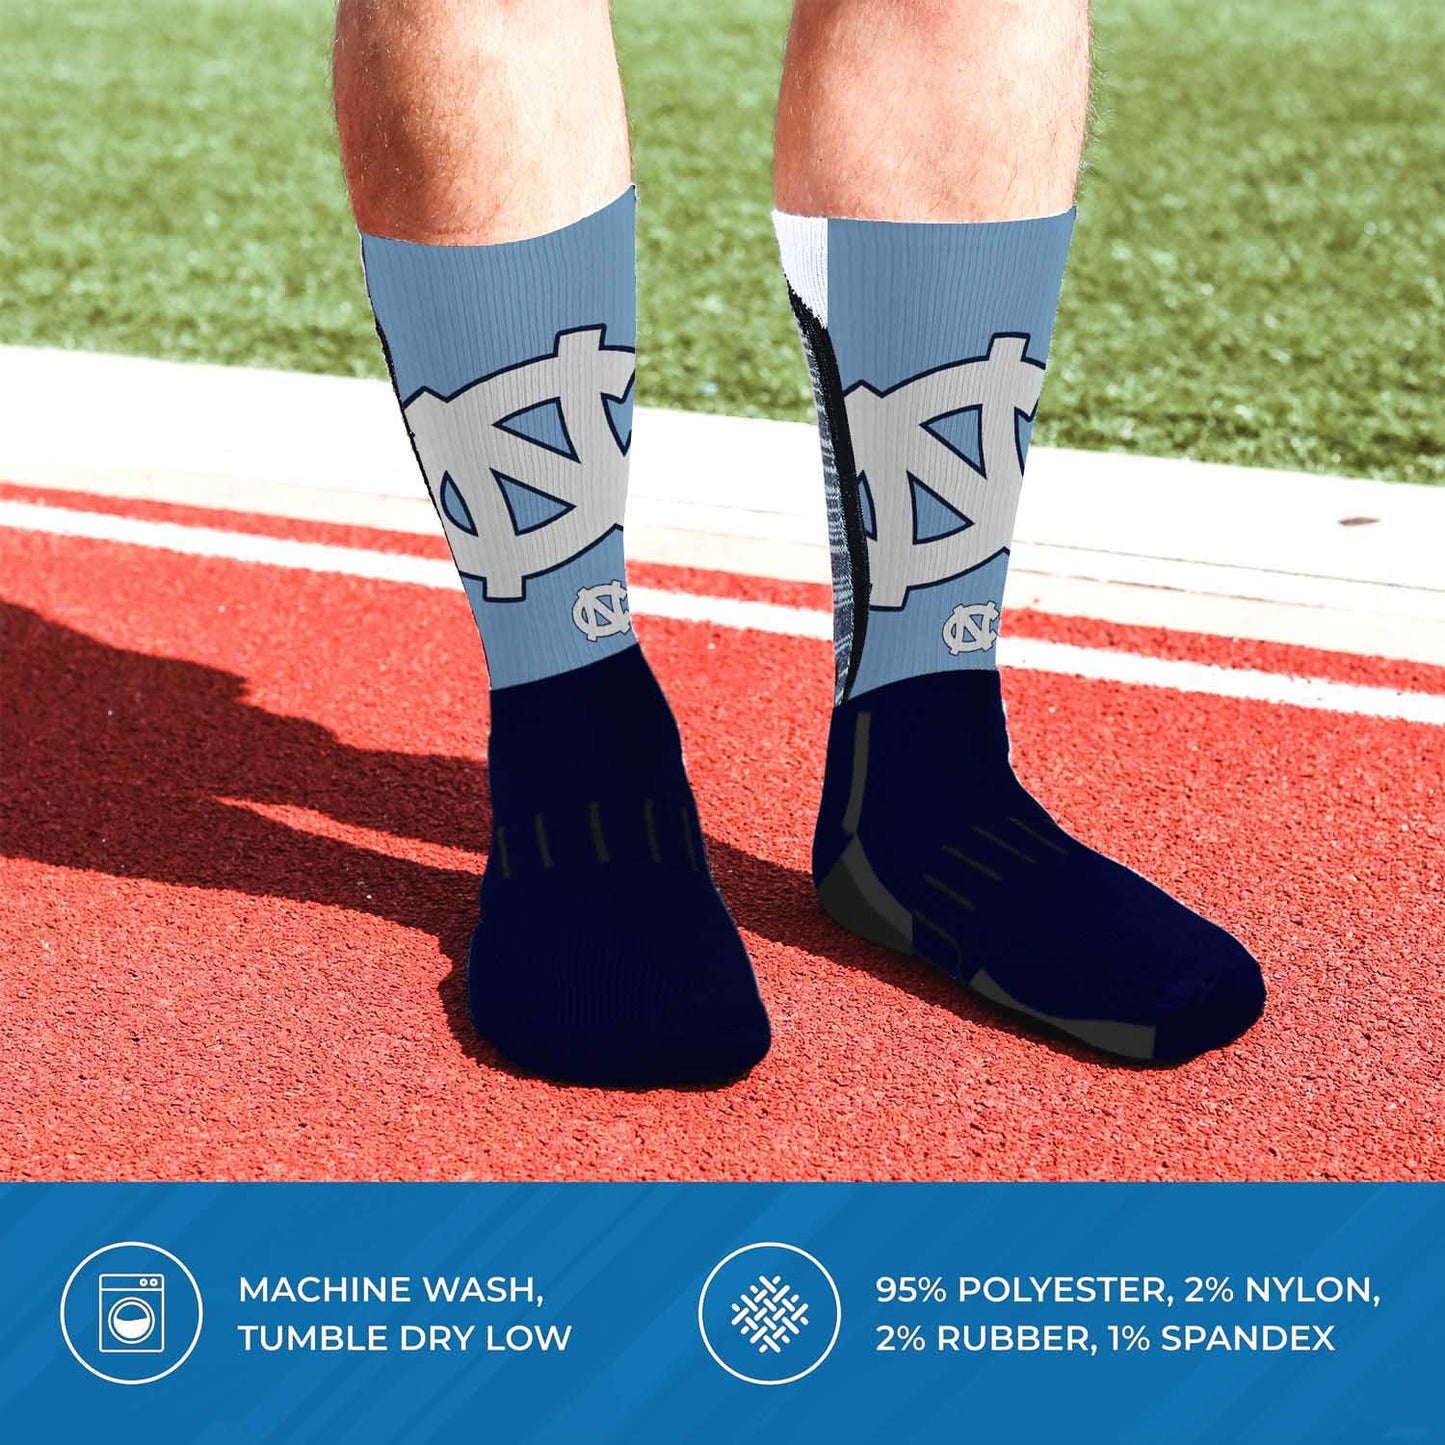 North Carolina Tar Heels NCAA Youth University Socks - Navy